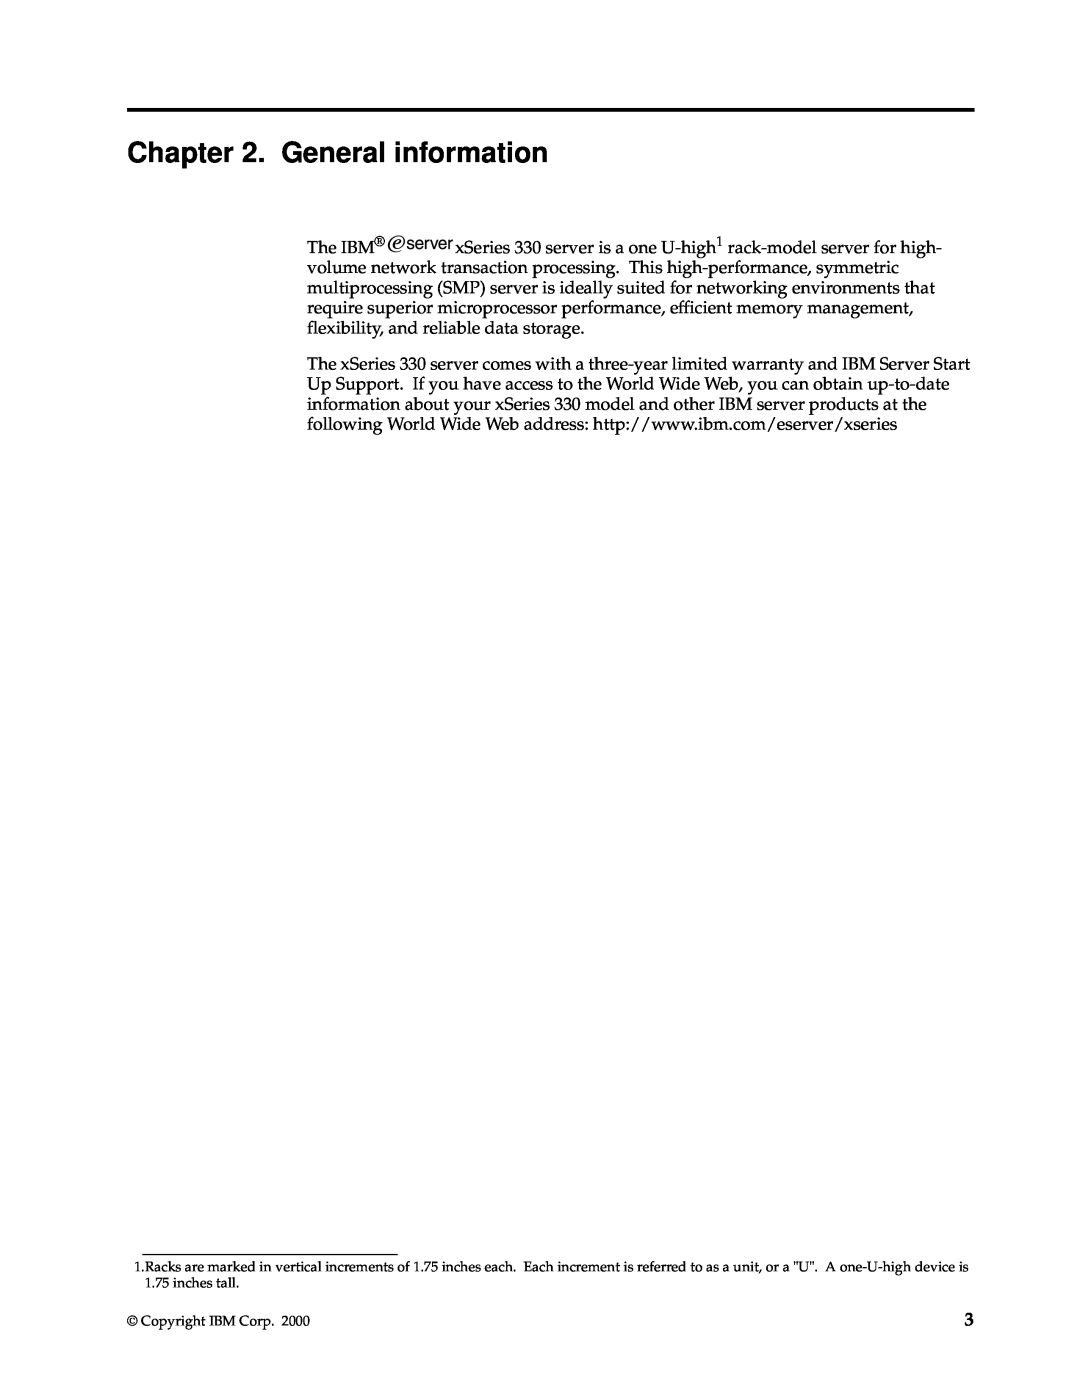 IBM xSeries 330 manual General information, Copyright IBM Corp 